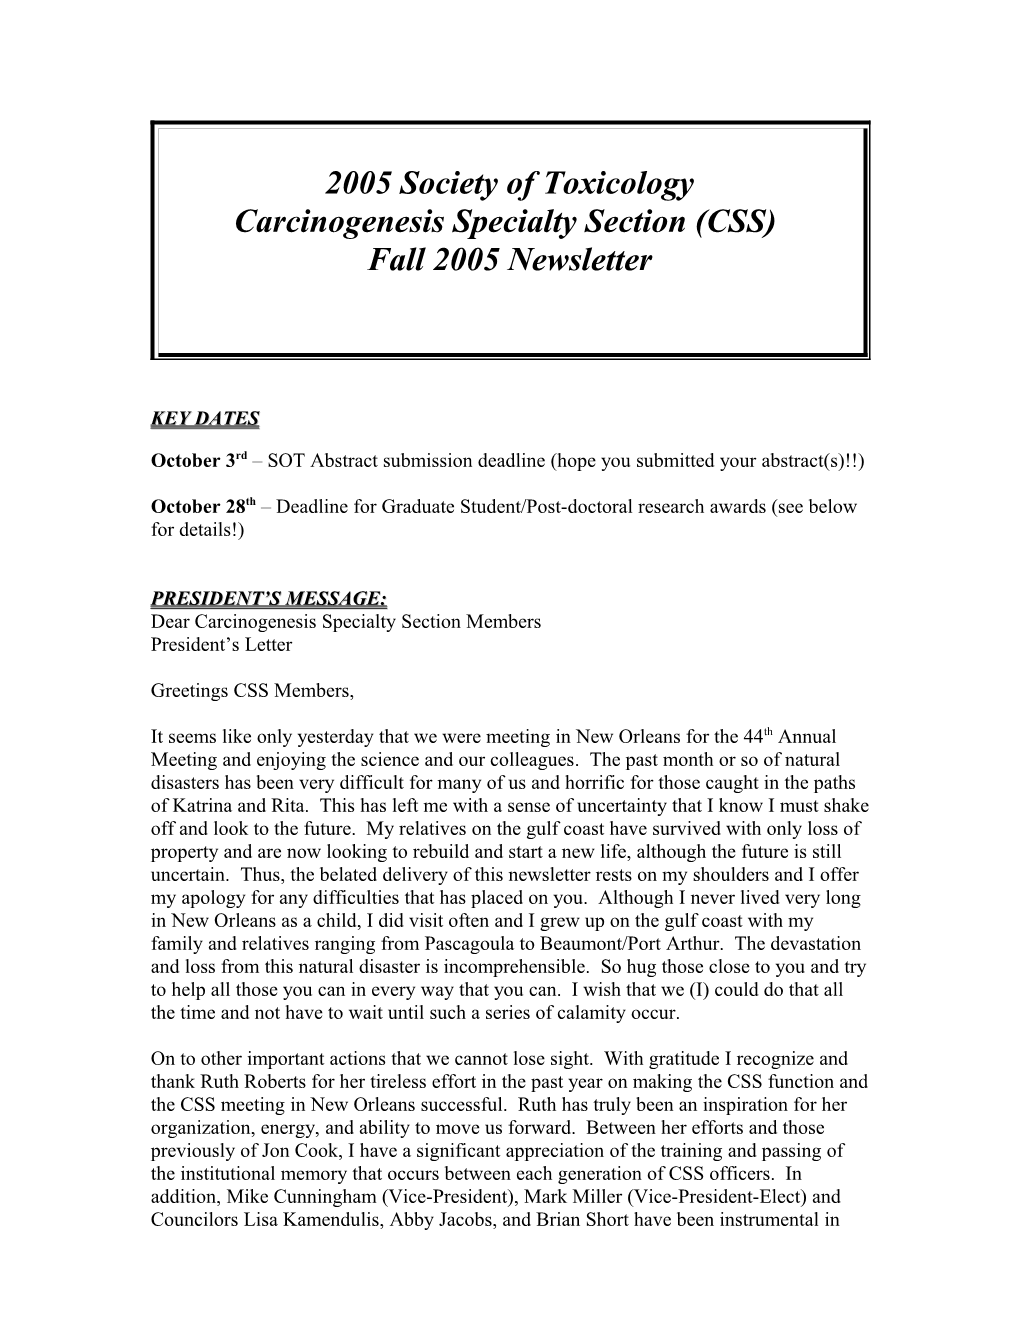 2003 Society of Toxicology